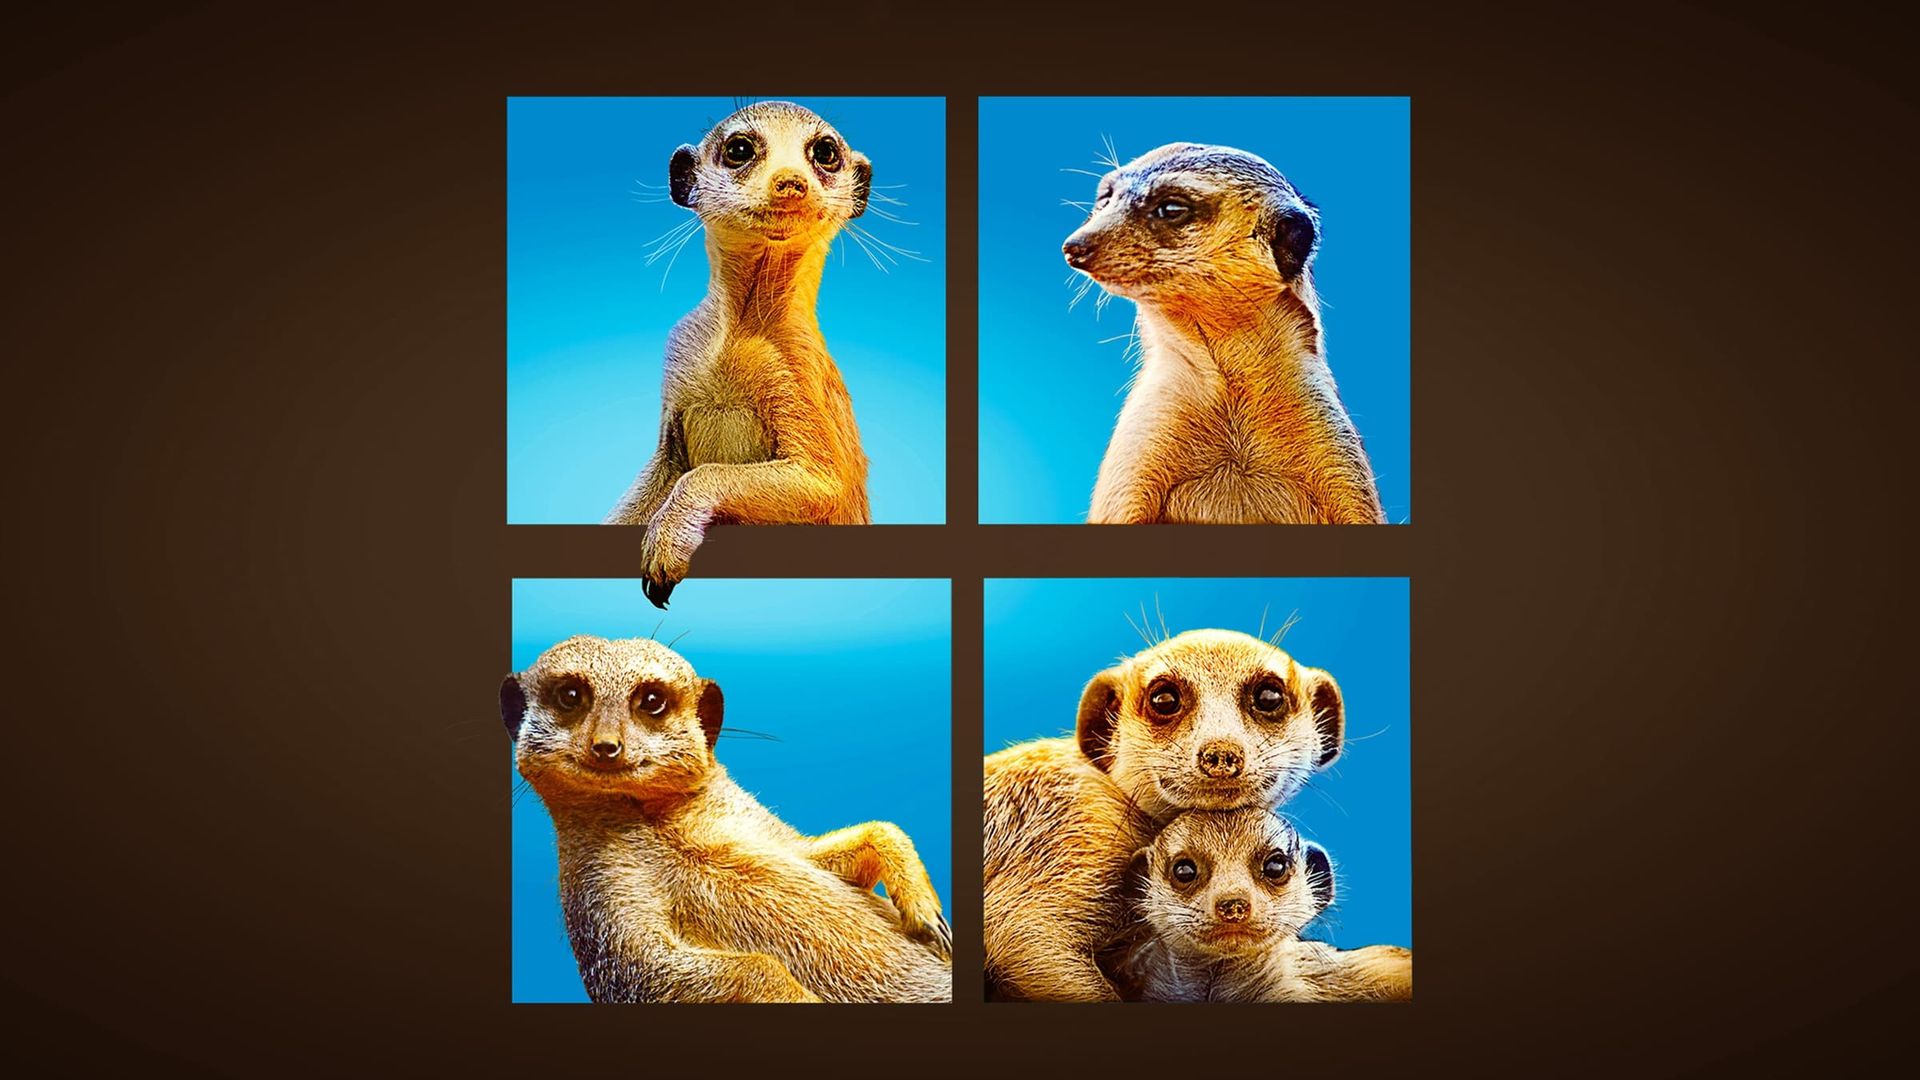 Meet the Meerkats background